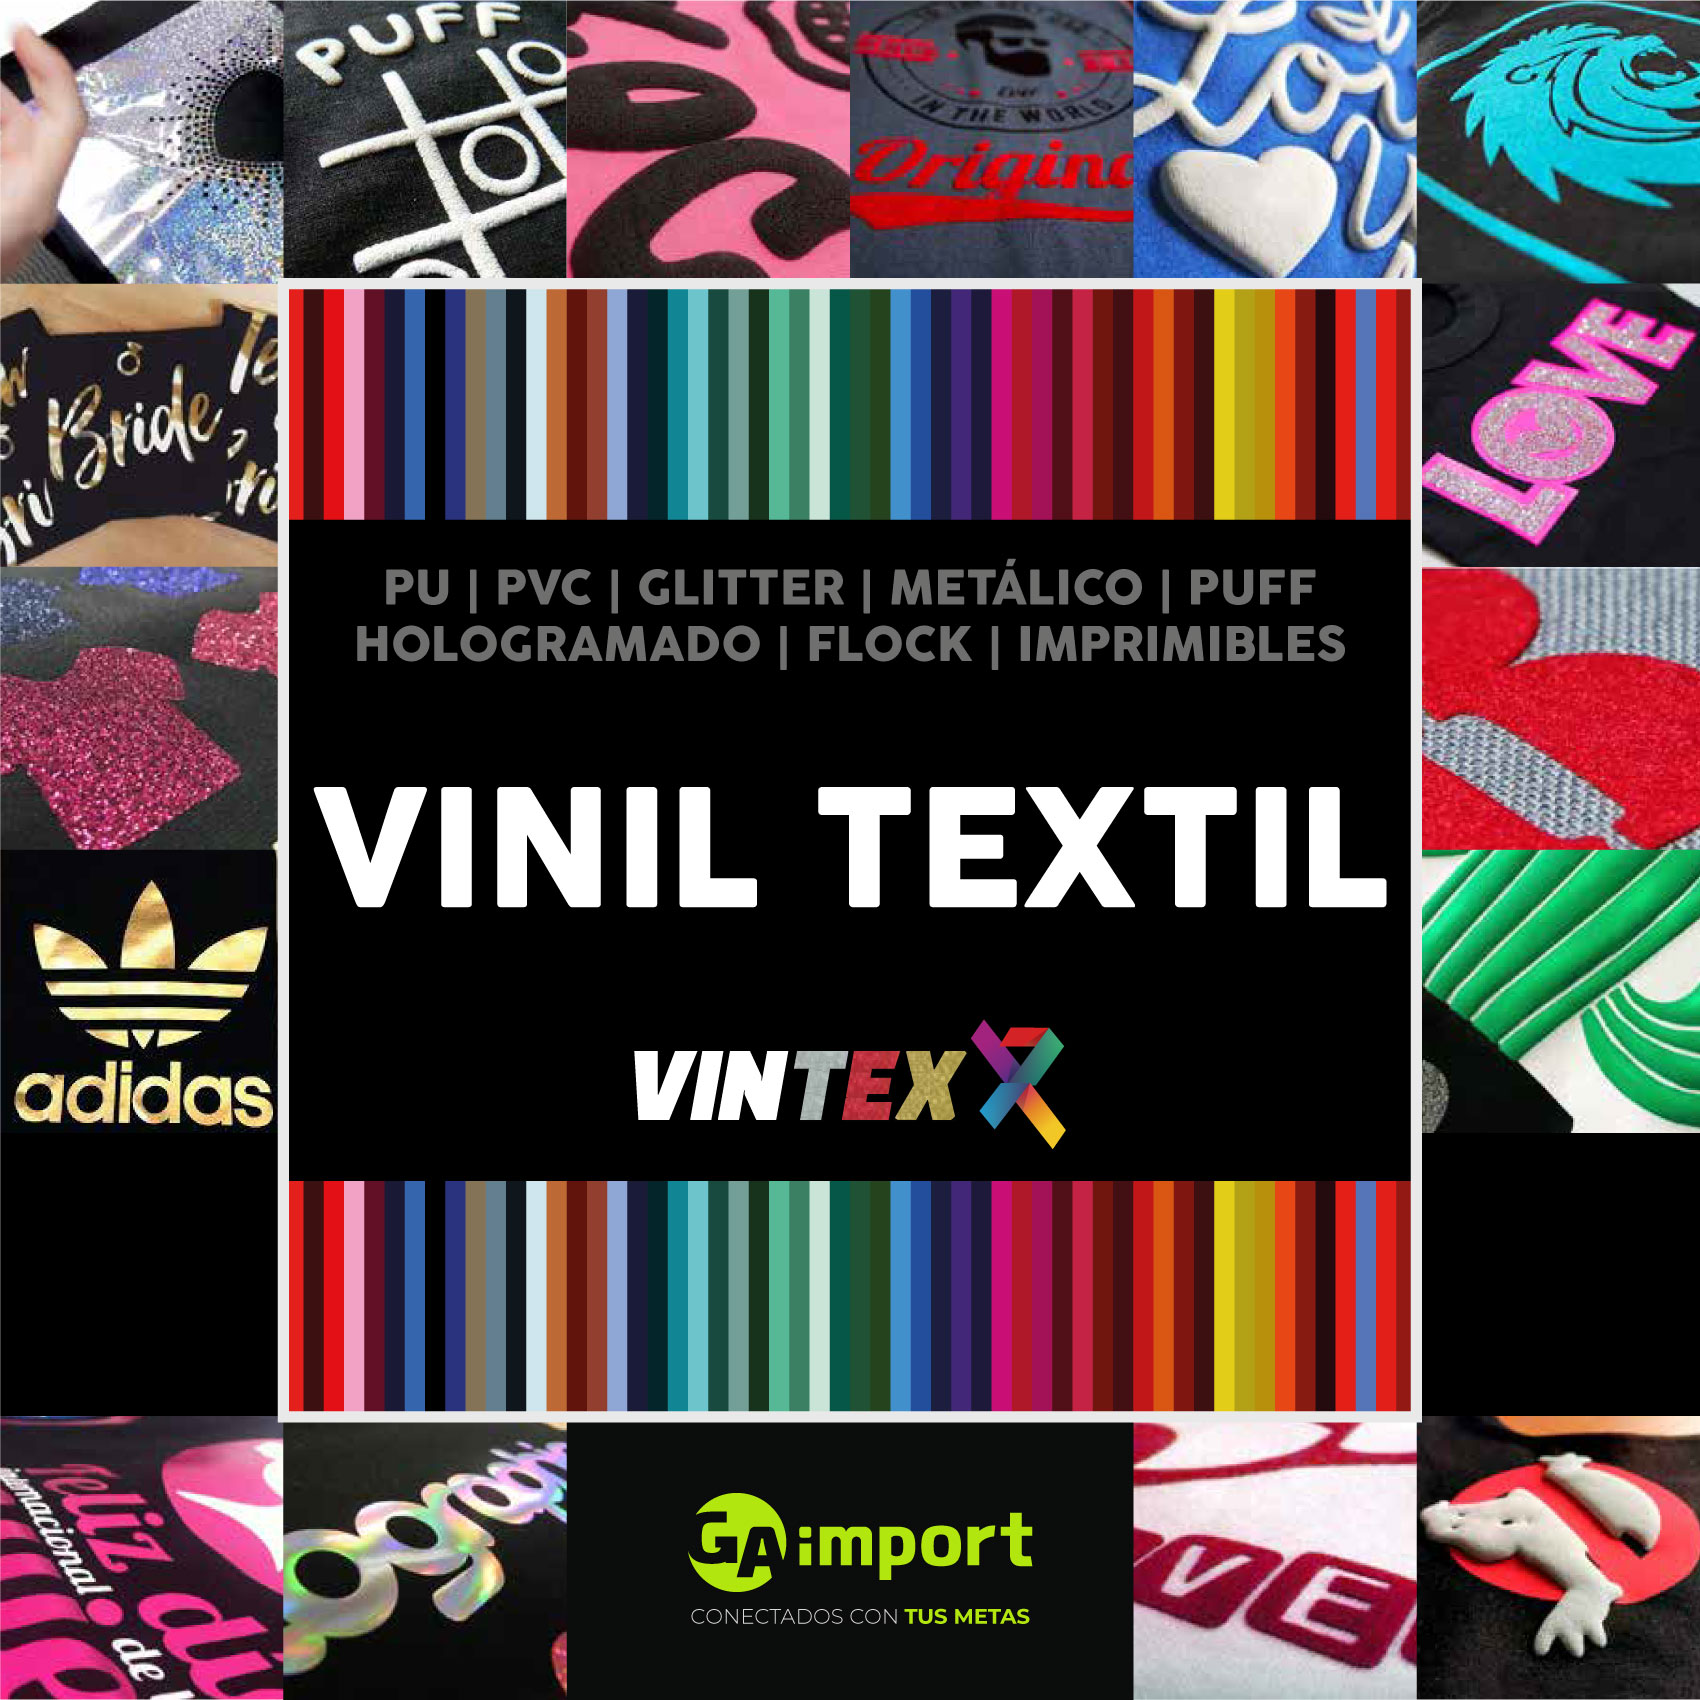 VINIL TEXTIL VINTEX - Asia Graphic Import